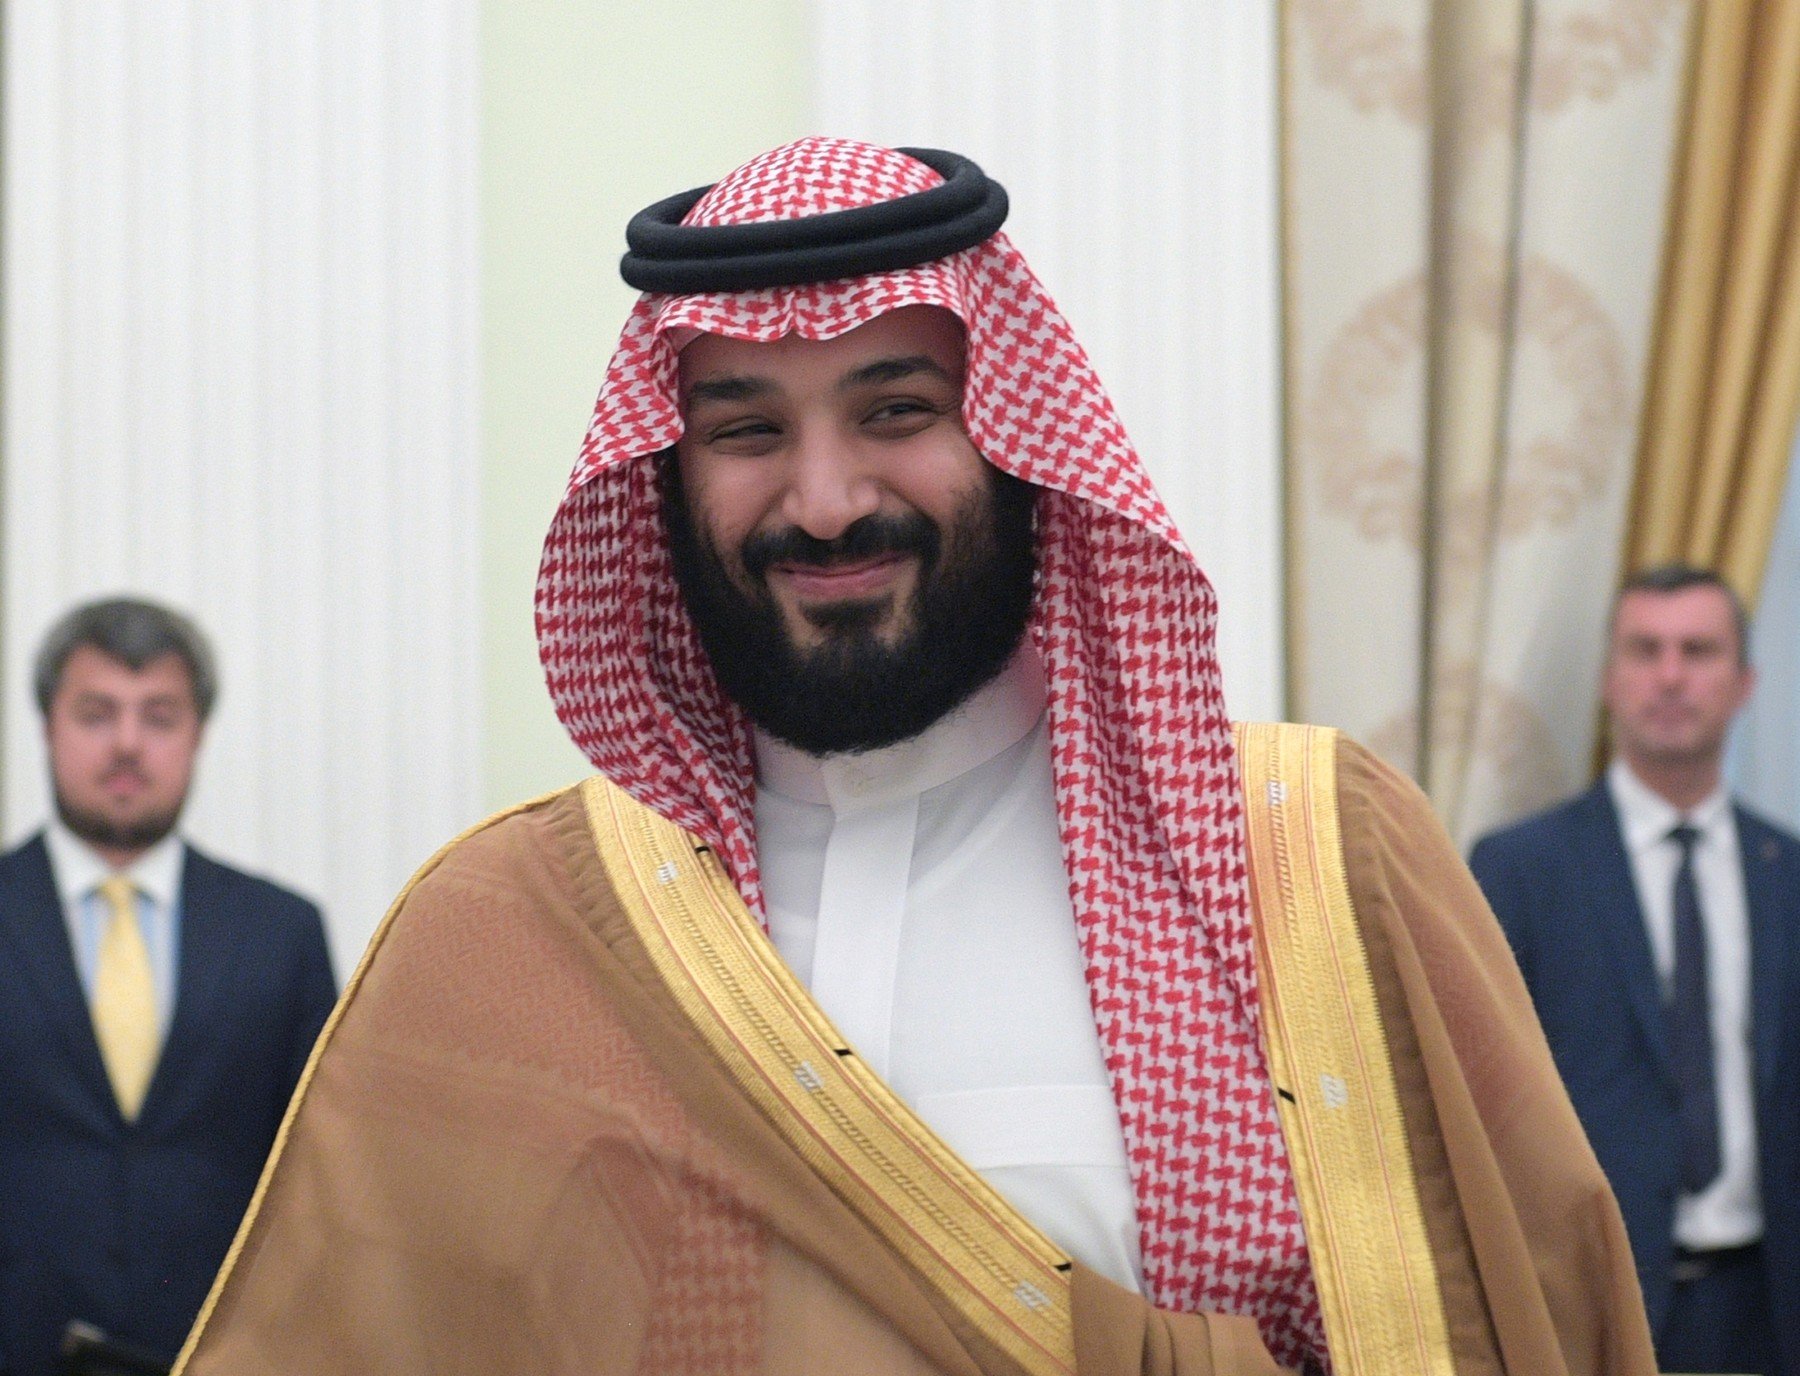 Mohamed bin Salmán, korunní princ Saúdské Arábie, který má nemalé schopnosti, ale i velké ambice, a nic z toho není vyváženo hlubším vzděláním ani životní zkušeností